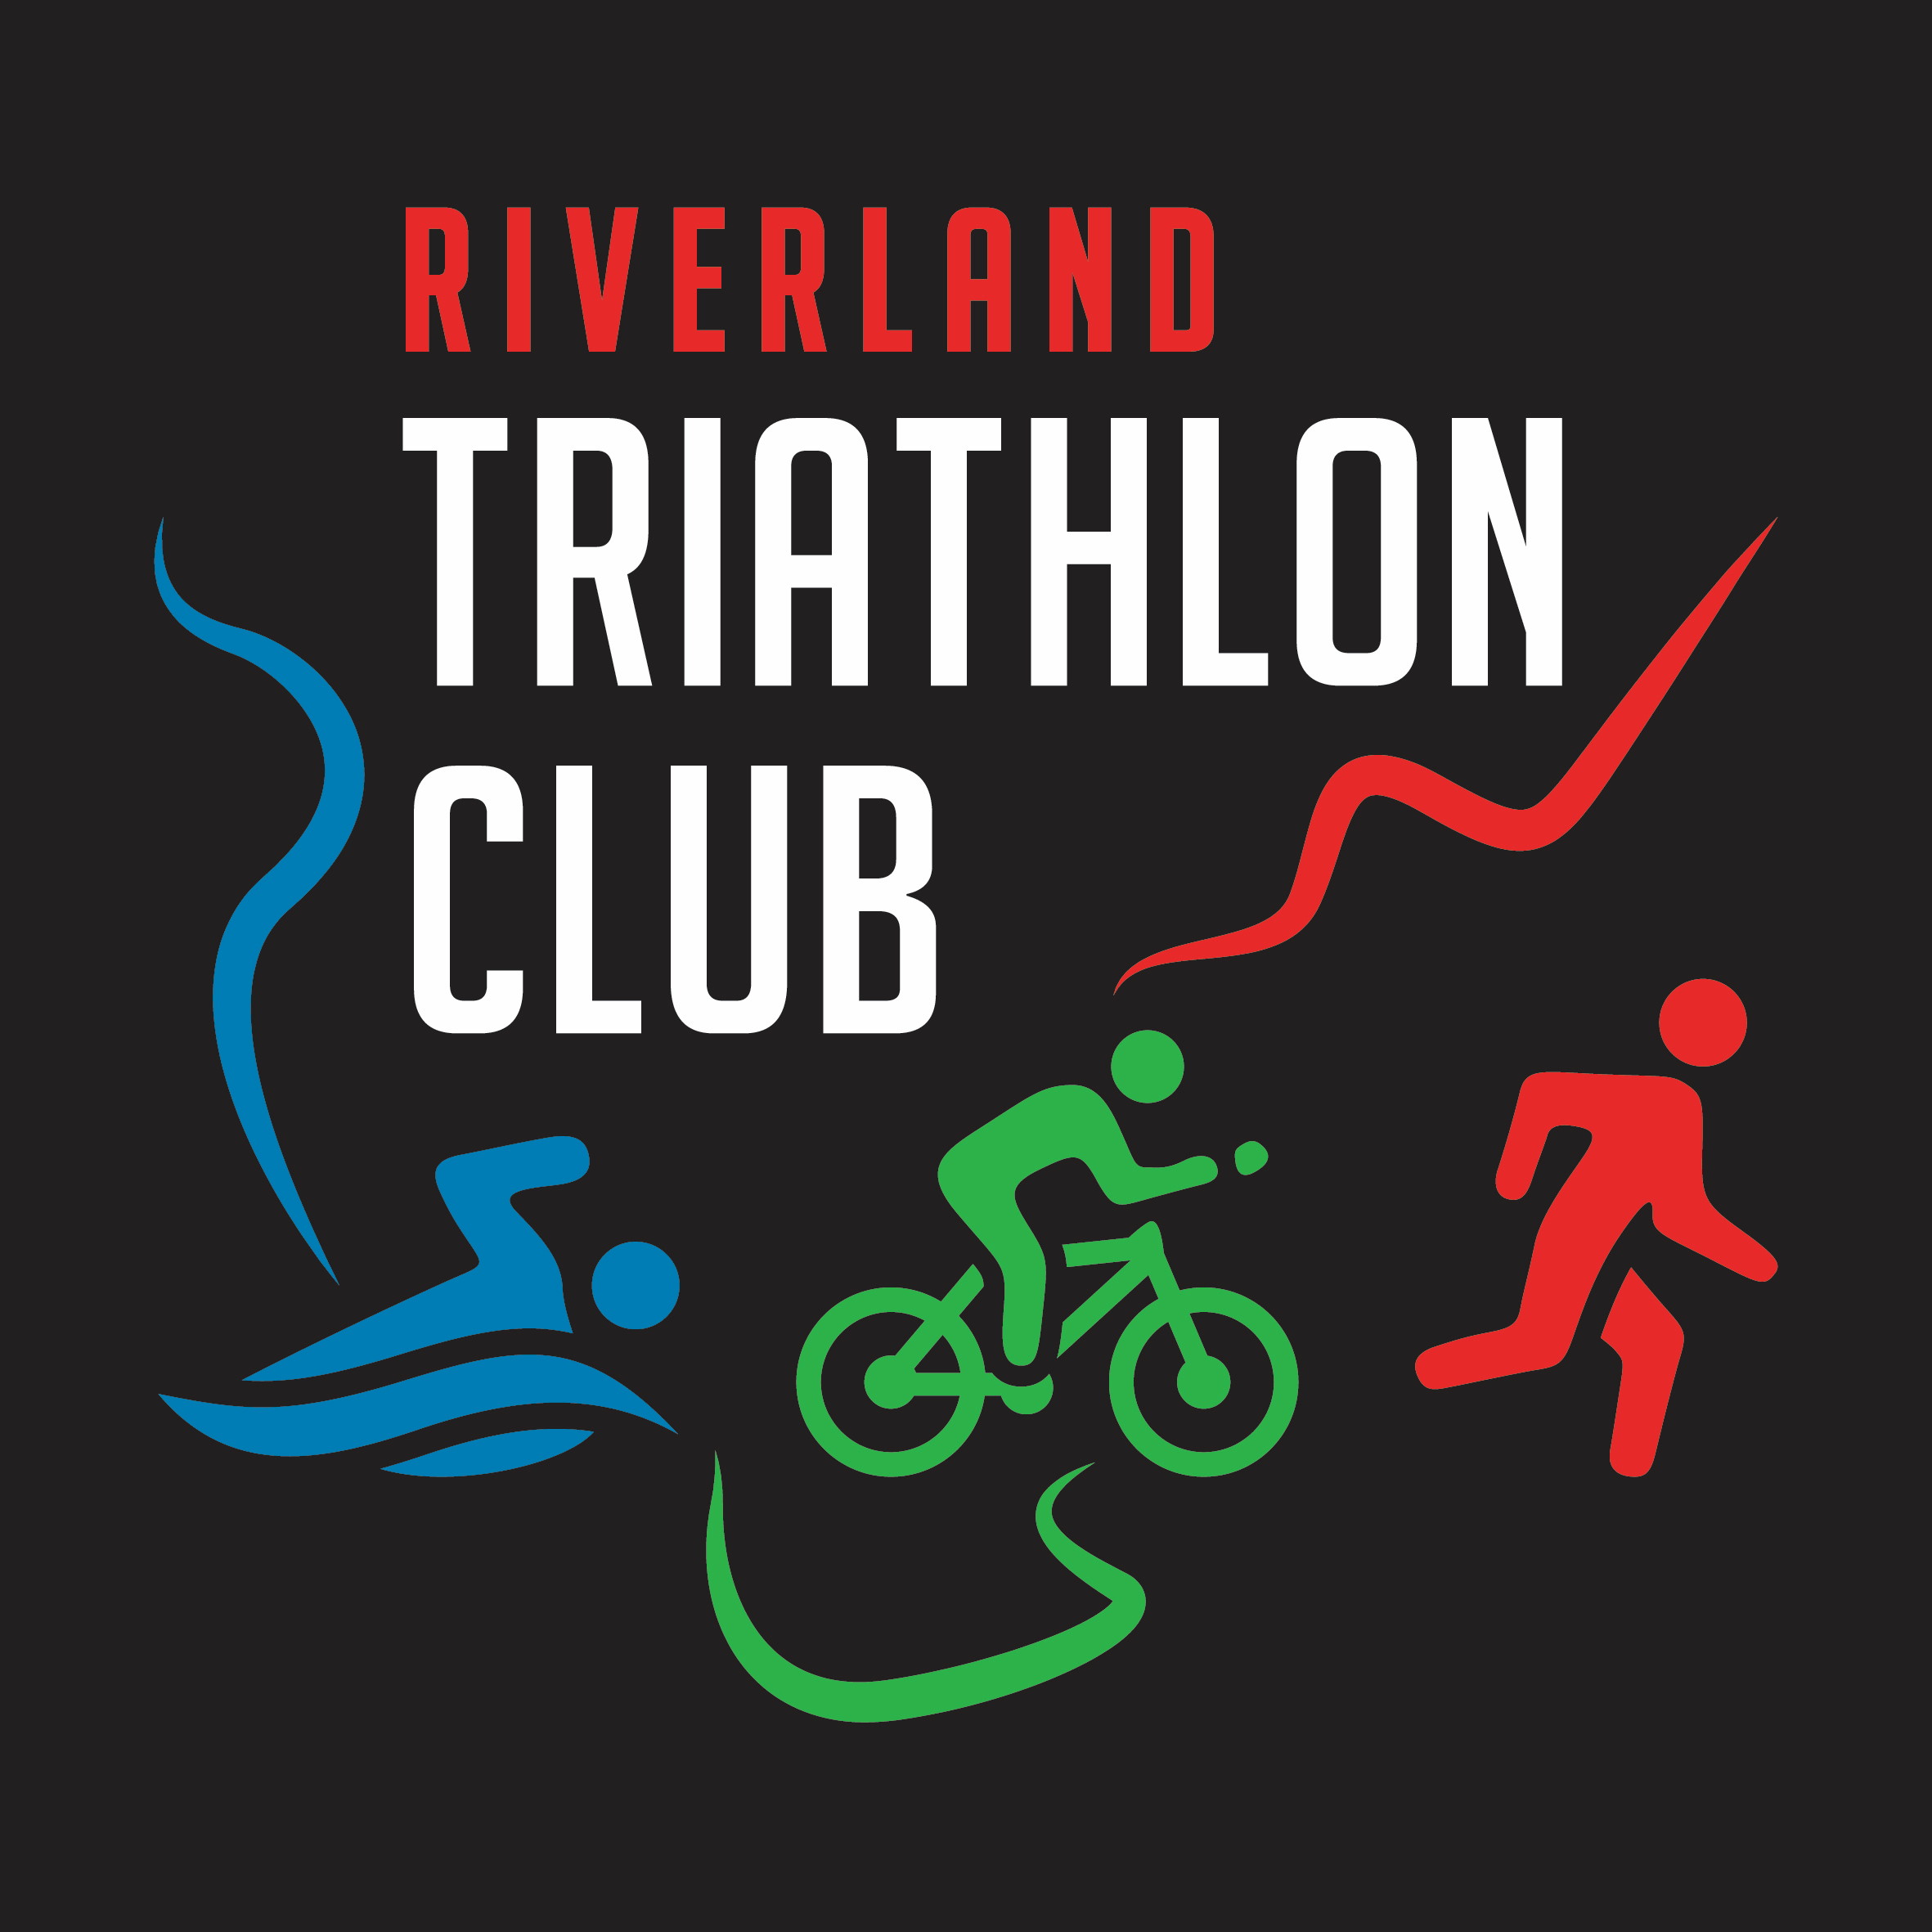 Riverland Triathlon Club logo